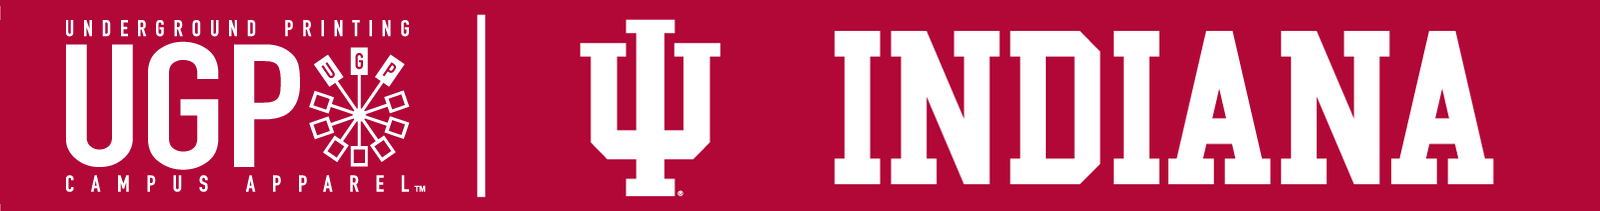 IU Hoosiers Logo - Indiana Apparel, IU Hoosiers Gear - Underground Printing